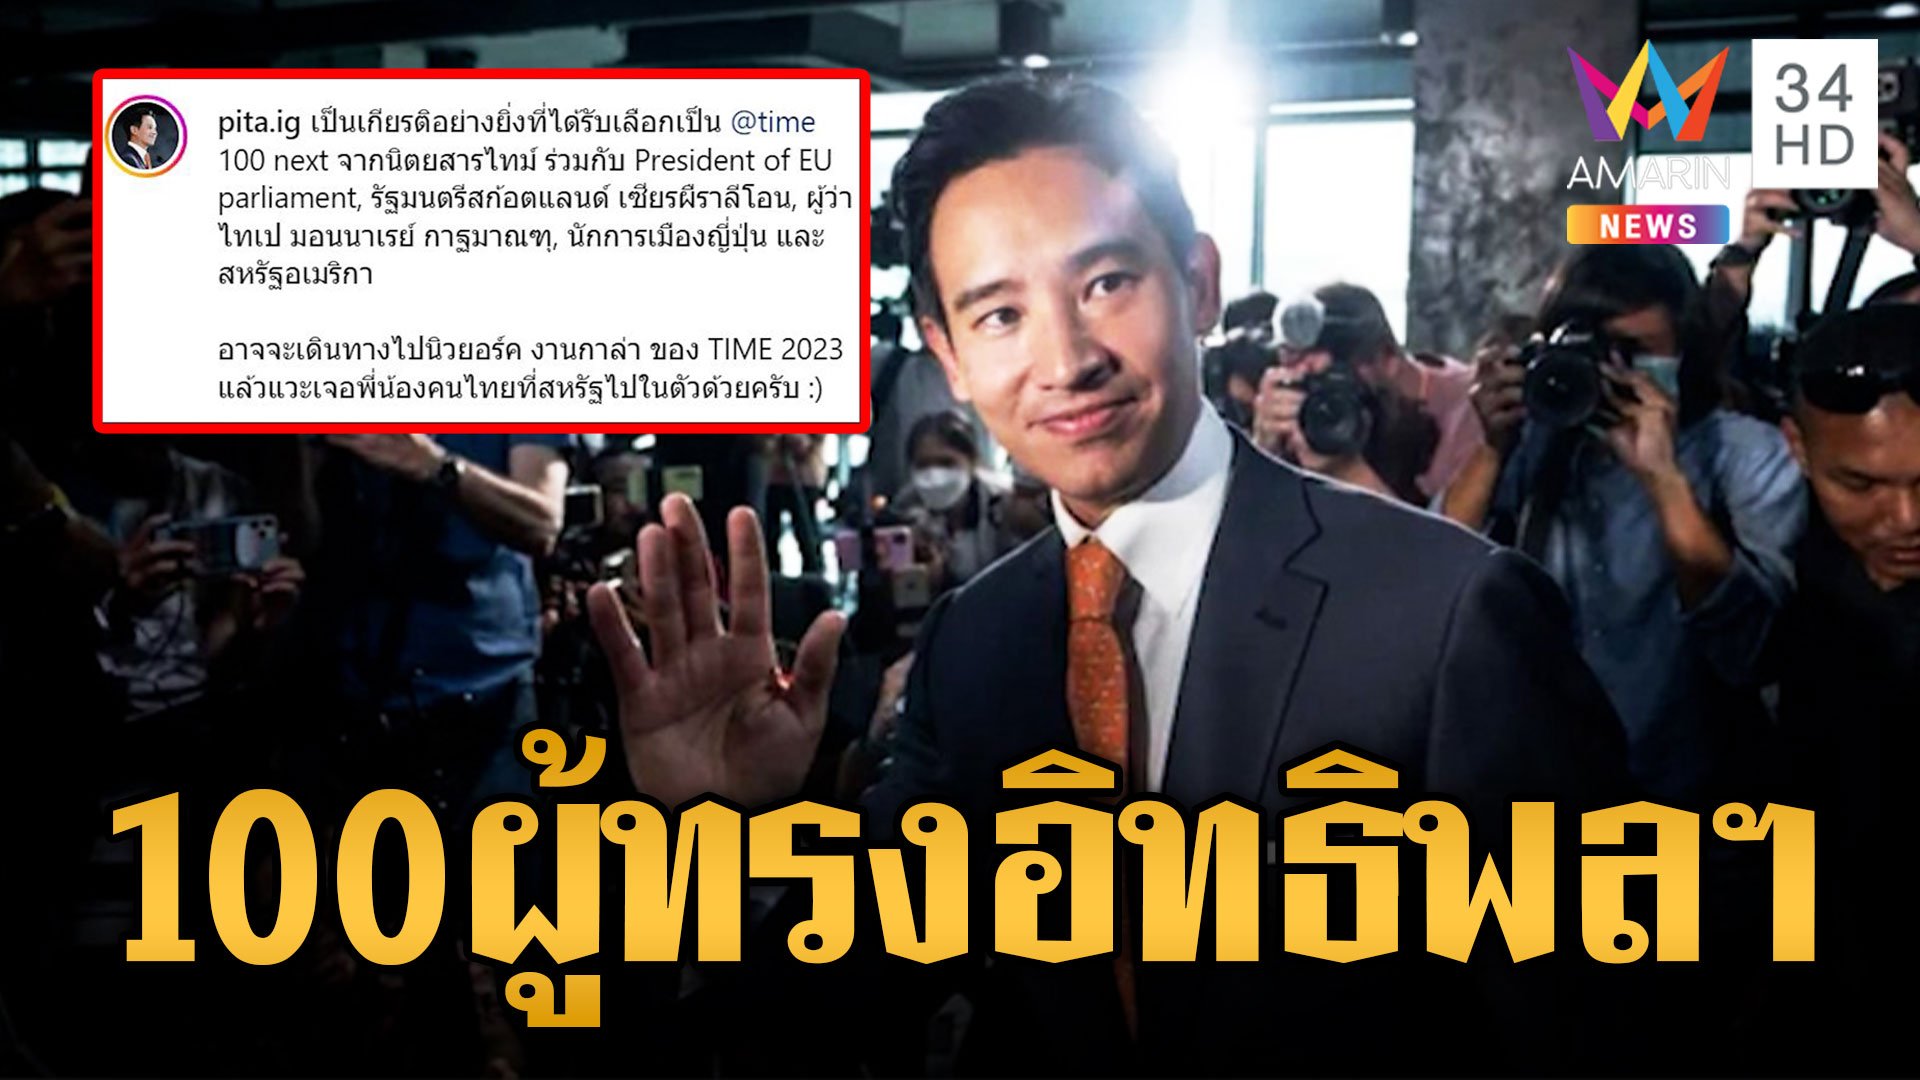 หนึ่งเดียวในไทย พิธา ติด 100 ผู้ทรงอิทธิพลแห่งอนาคต ของนิตสารไทม์ | ข่าวอรุณอมรินทร์ | 14 ก.ย. 66 | AMARIN TVHD34